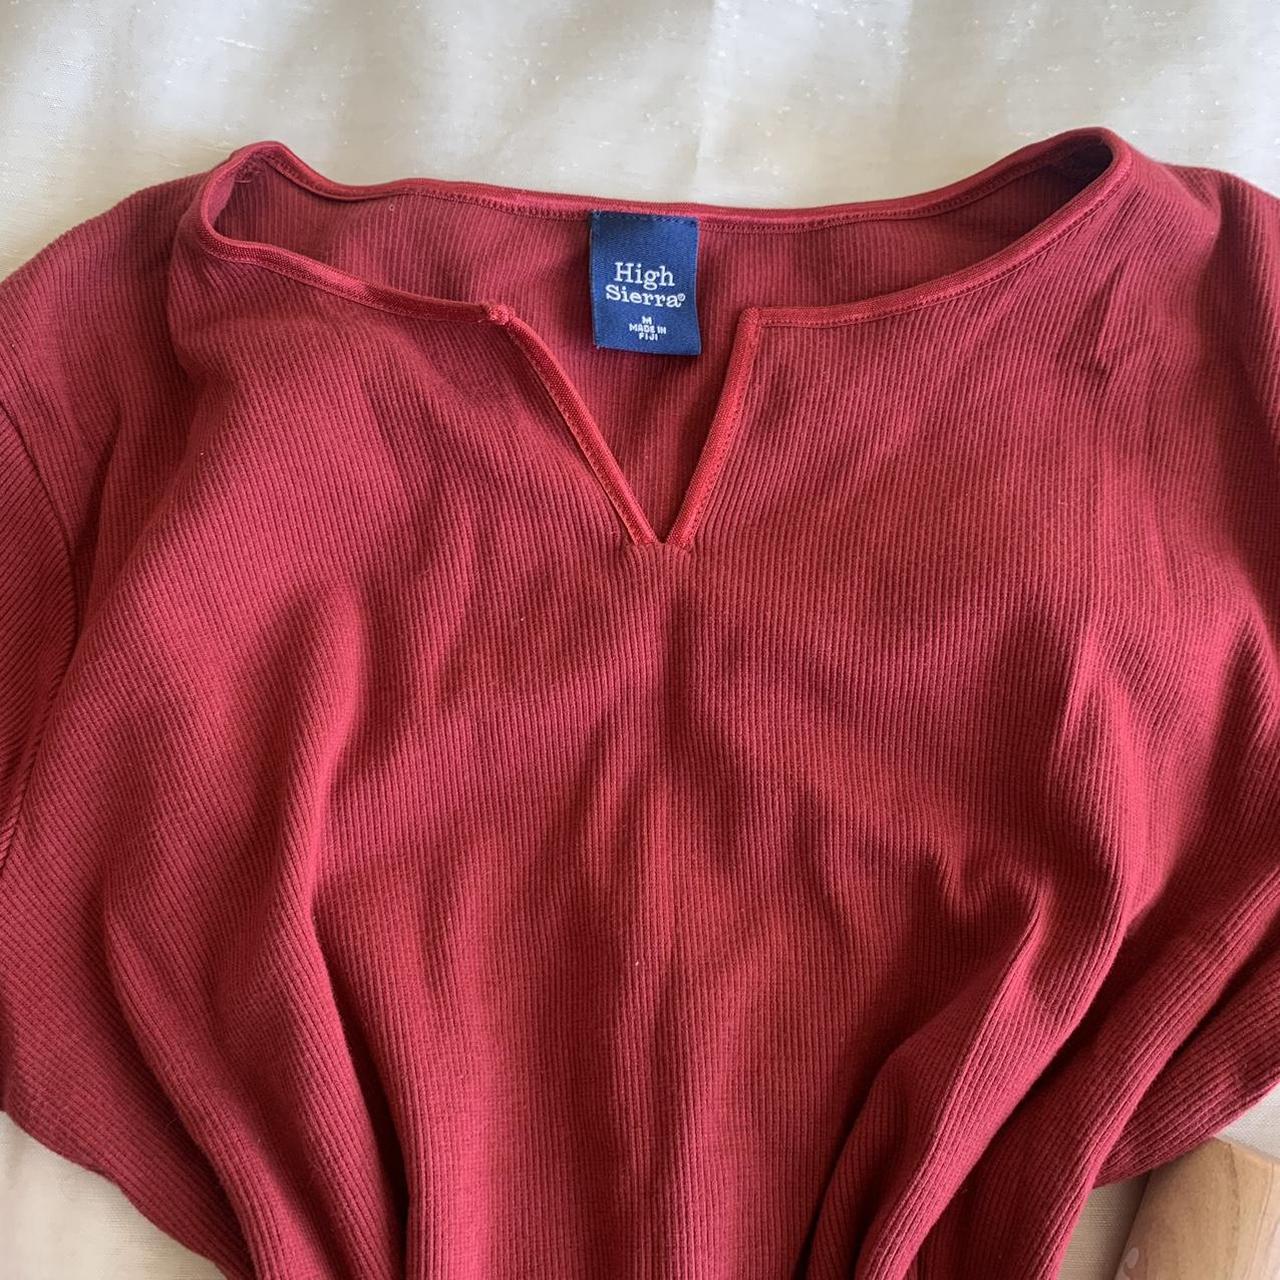 High Sierra Women's Red Shirt (6)